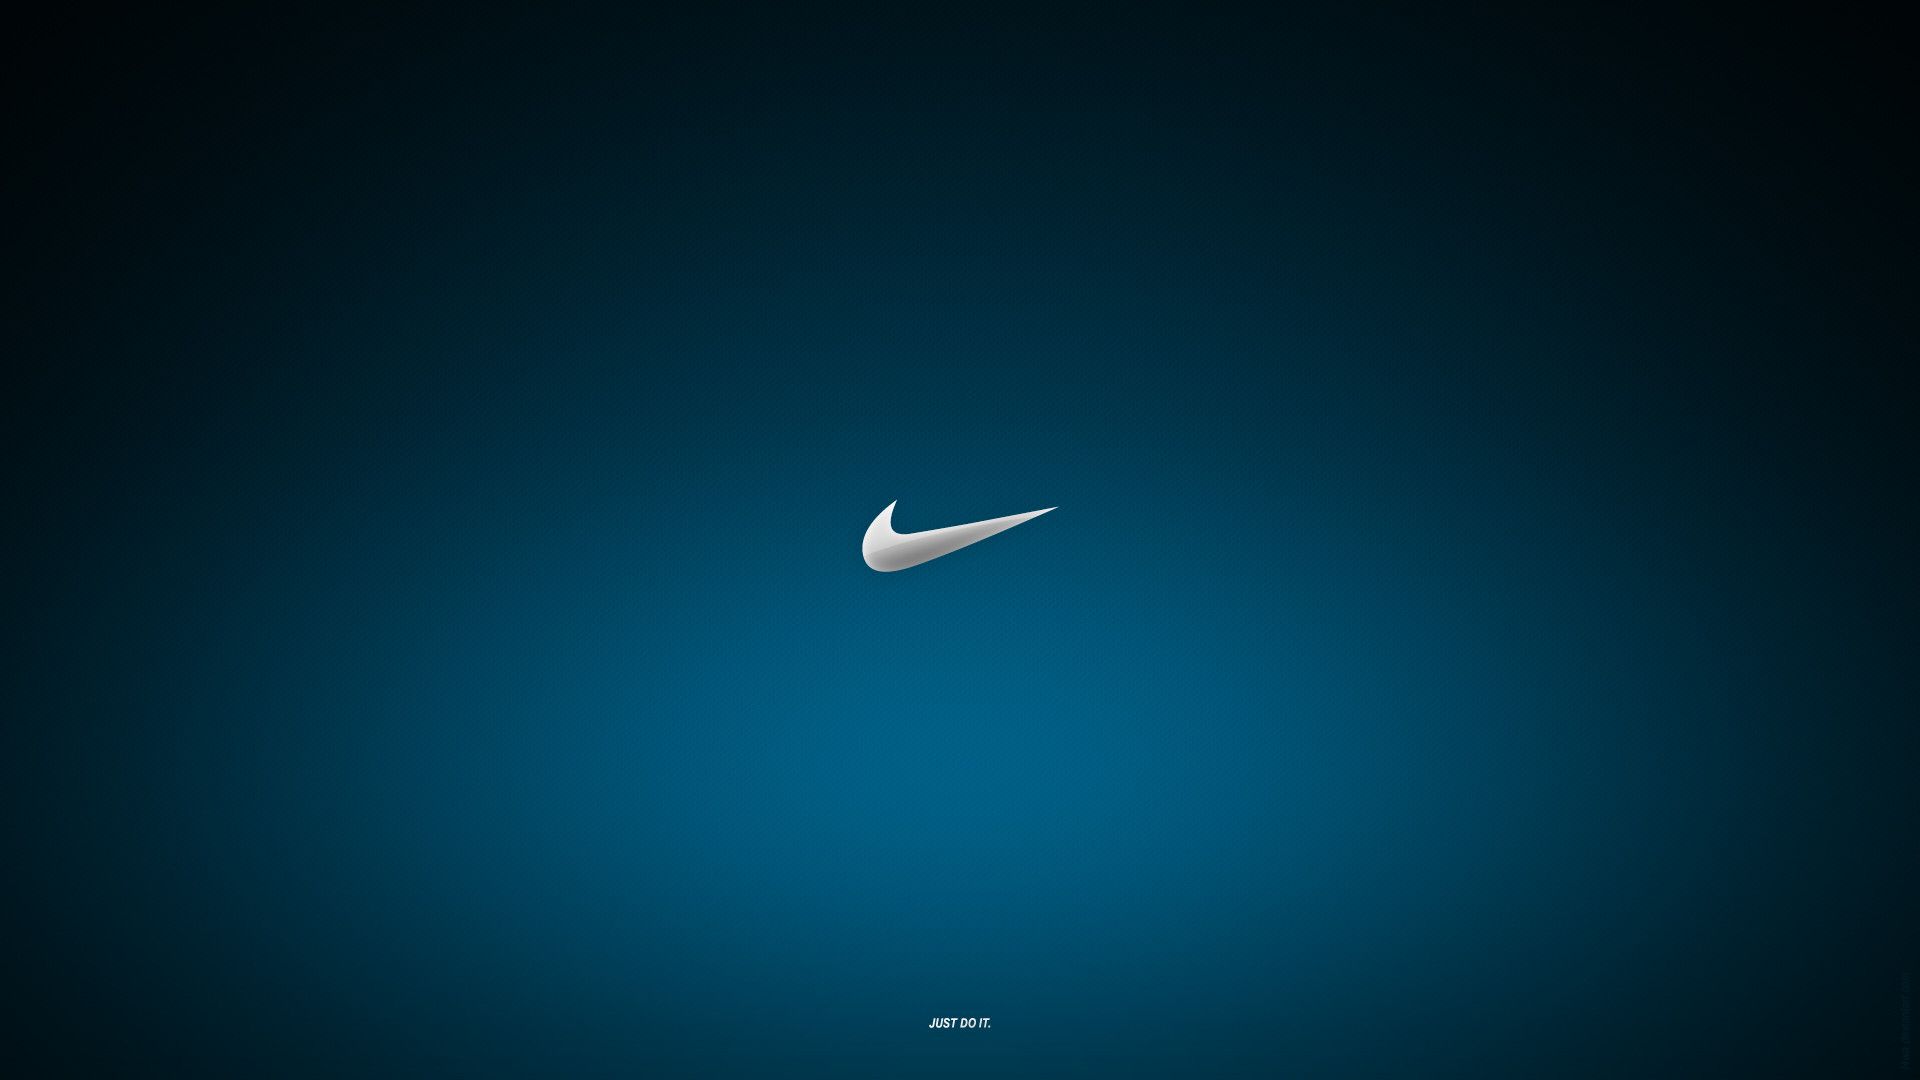 77+] Nike Wallpaper For Laptop - WallpaperSafari